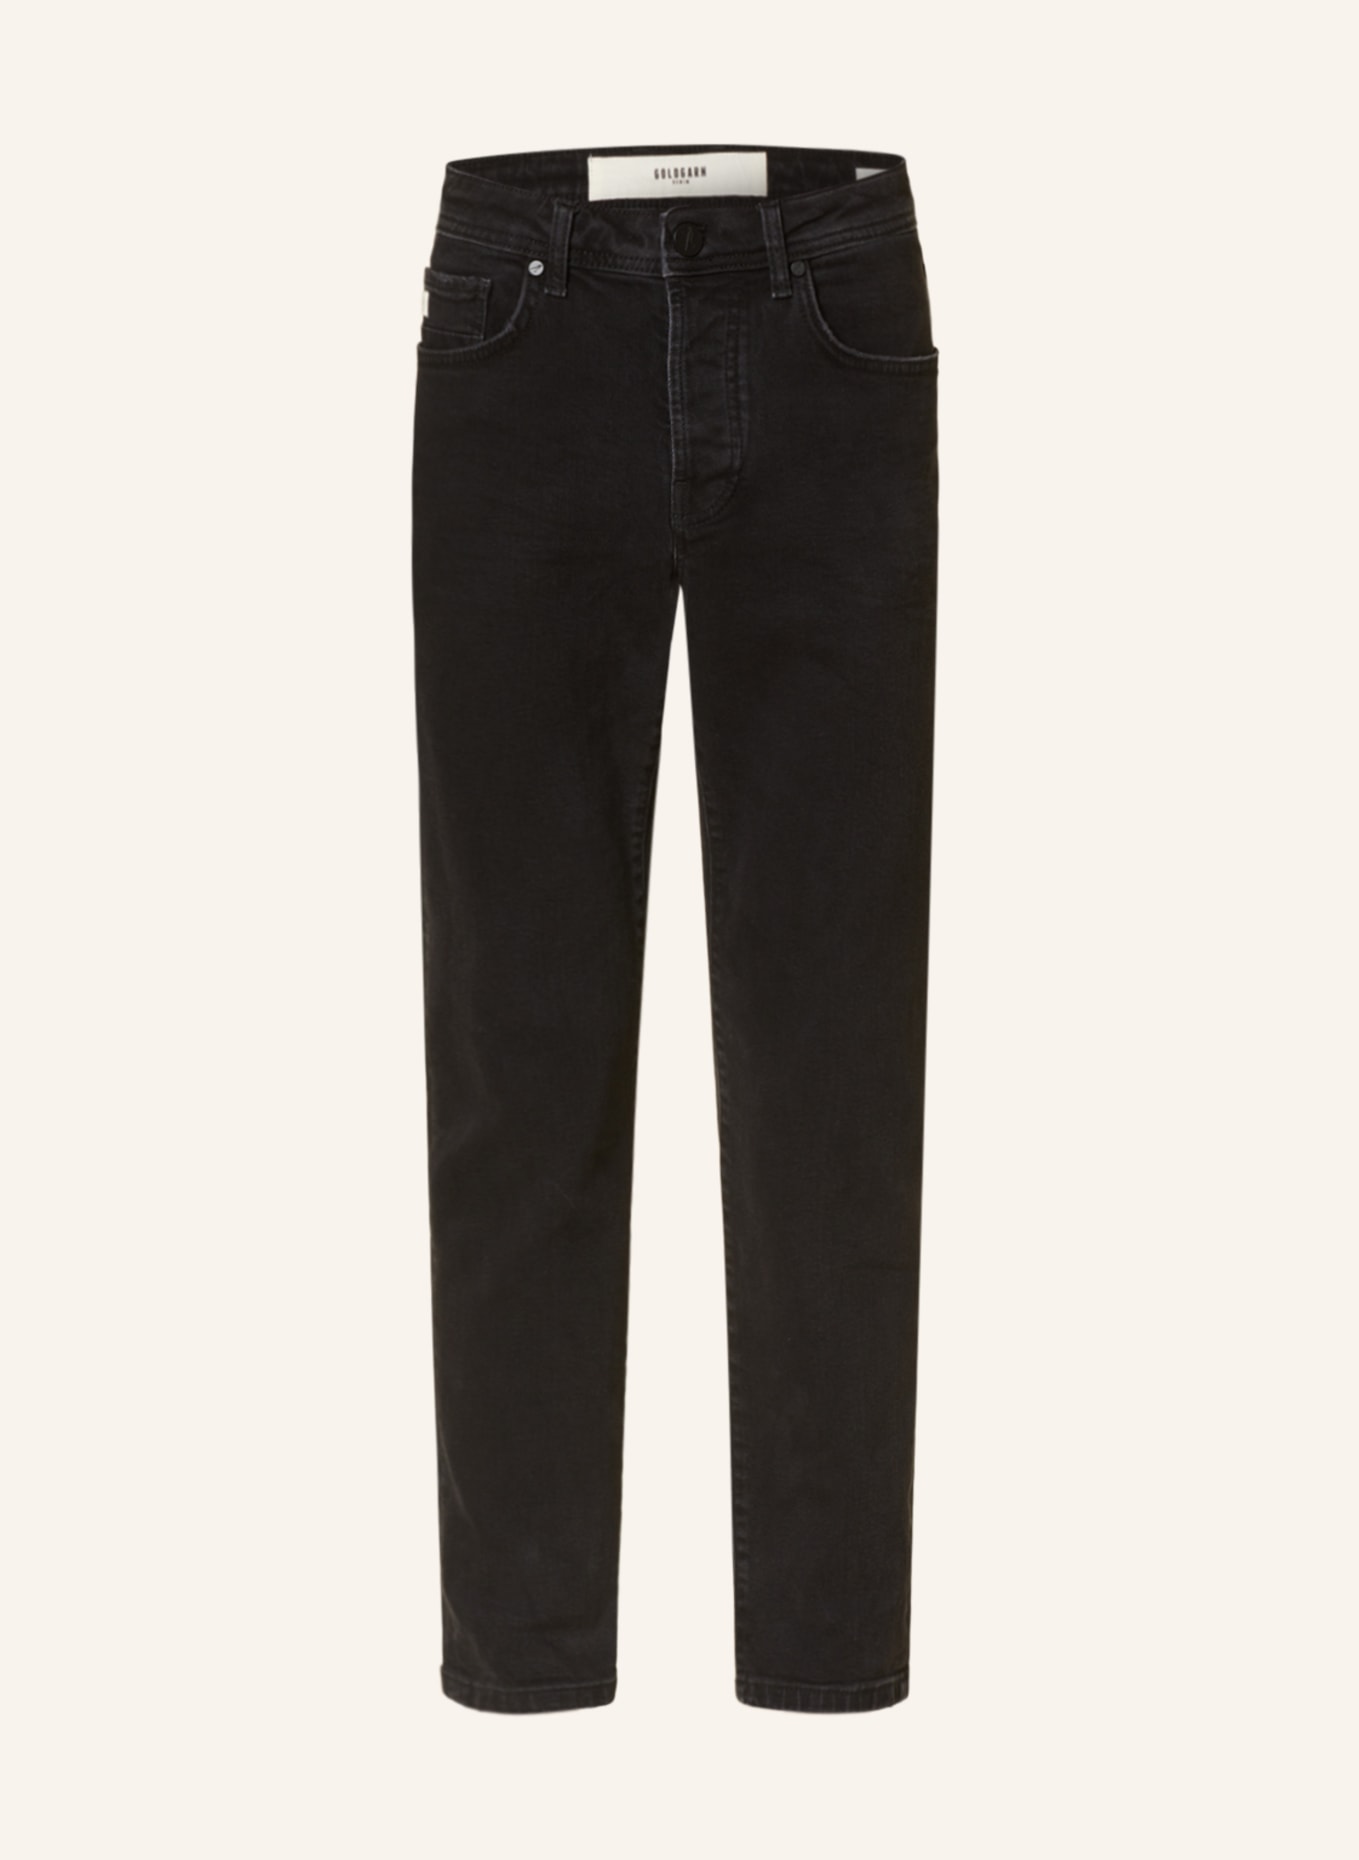 GOLDGARN DENIM Jeans U2 Tapered Fit, Farbe: 1900 BLACK (Bild 1)